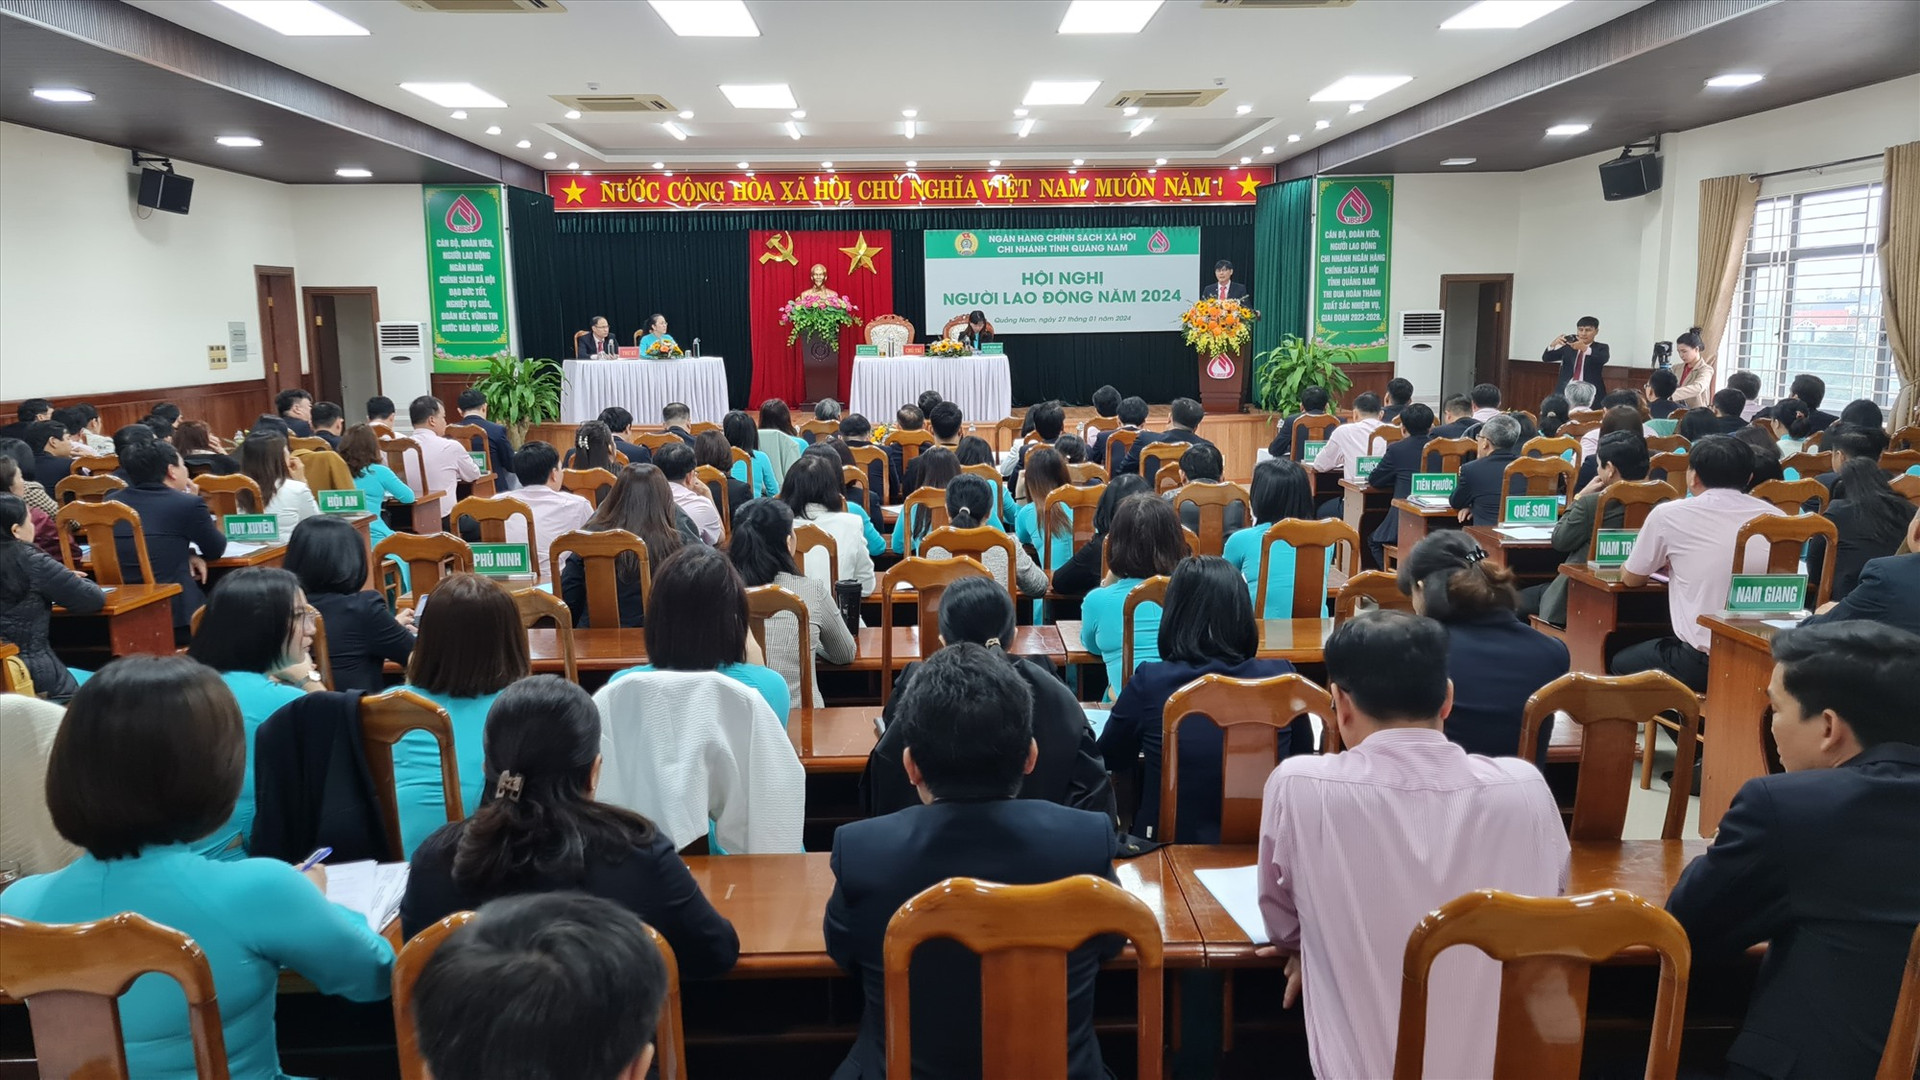 Hội nghị người lao động của Ngân hàng Chính sách xã hội chi nhánh Quảng Nam được tổ chức vào sáng nay 27/1. Ảnh; D.L